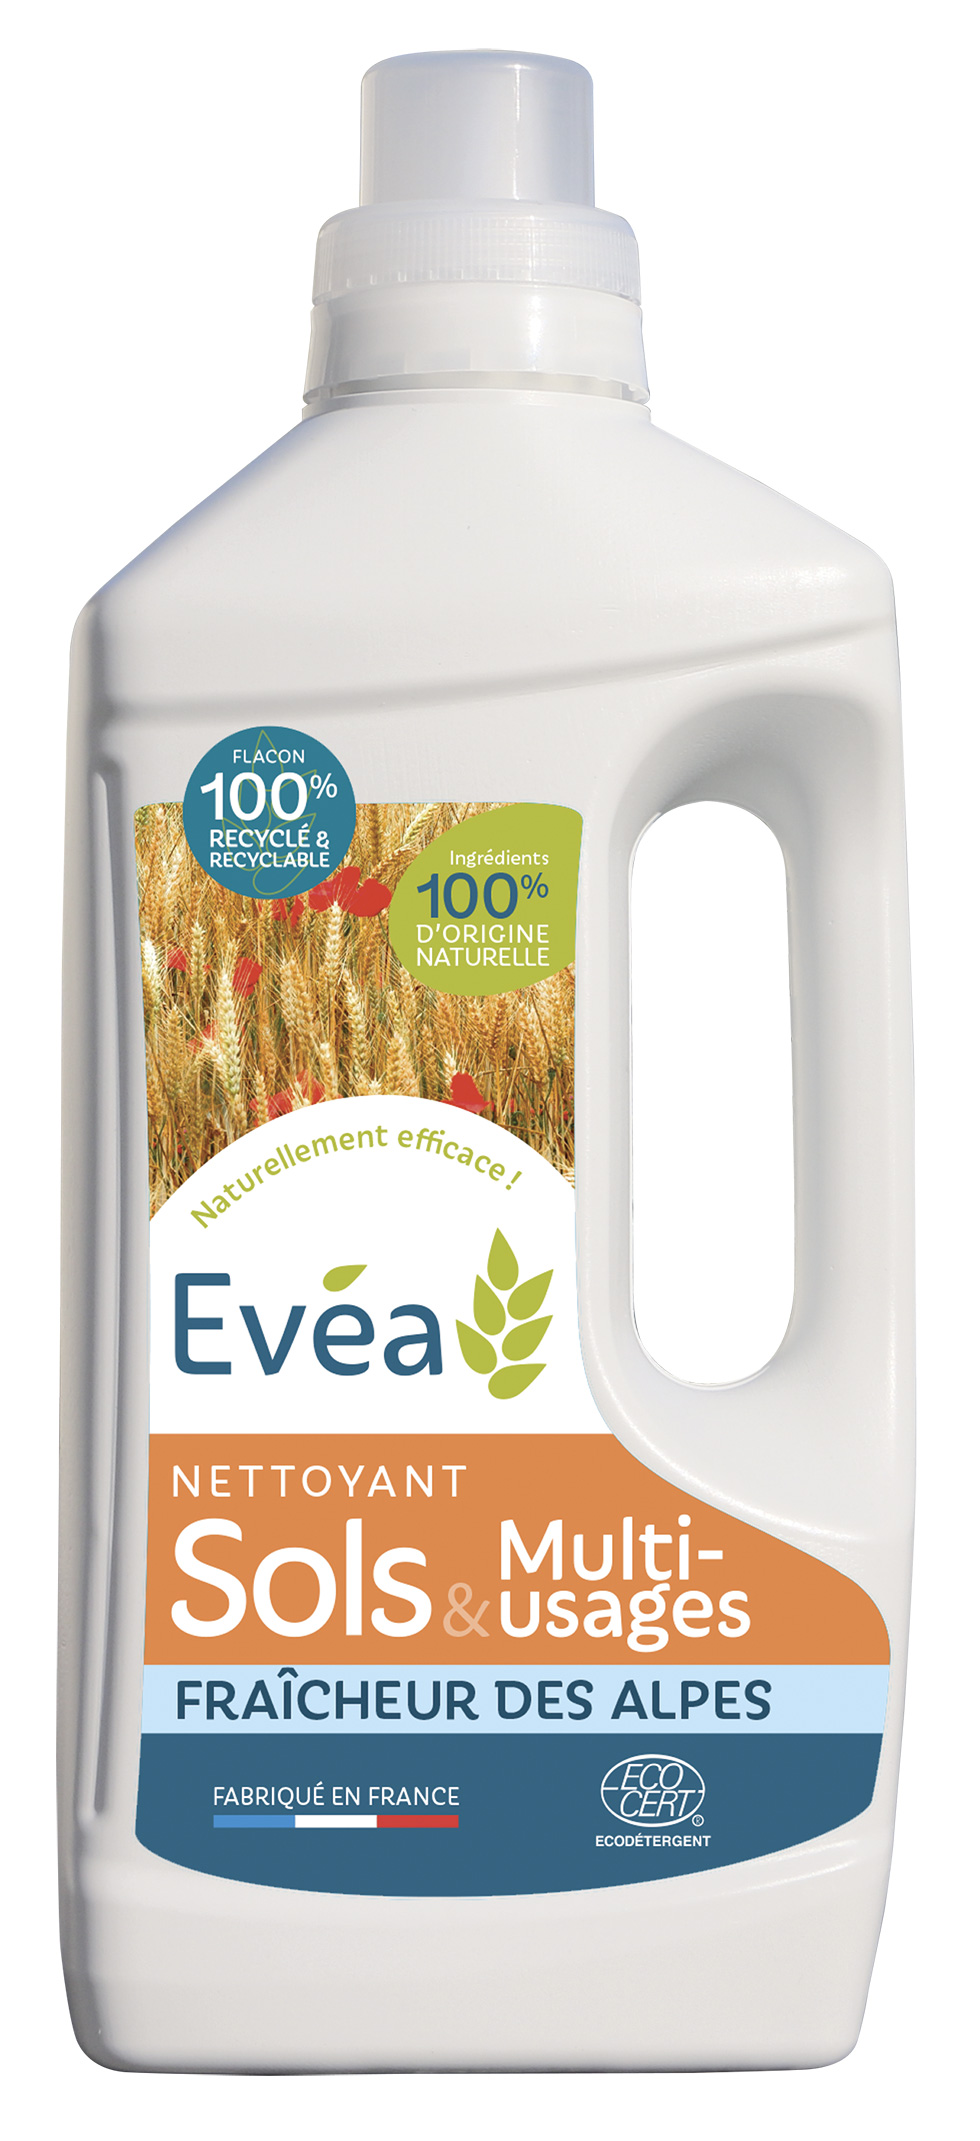 Nettoyant Sols Multi-usages Evéa - Produits d'hygiène et de nettoyage agro-sourcés